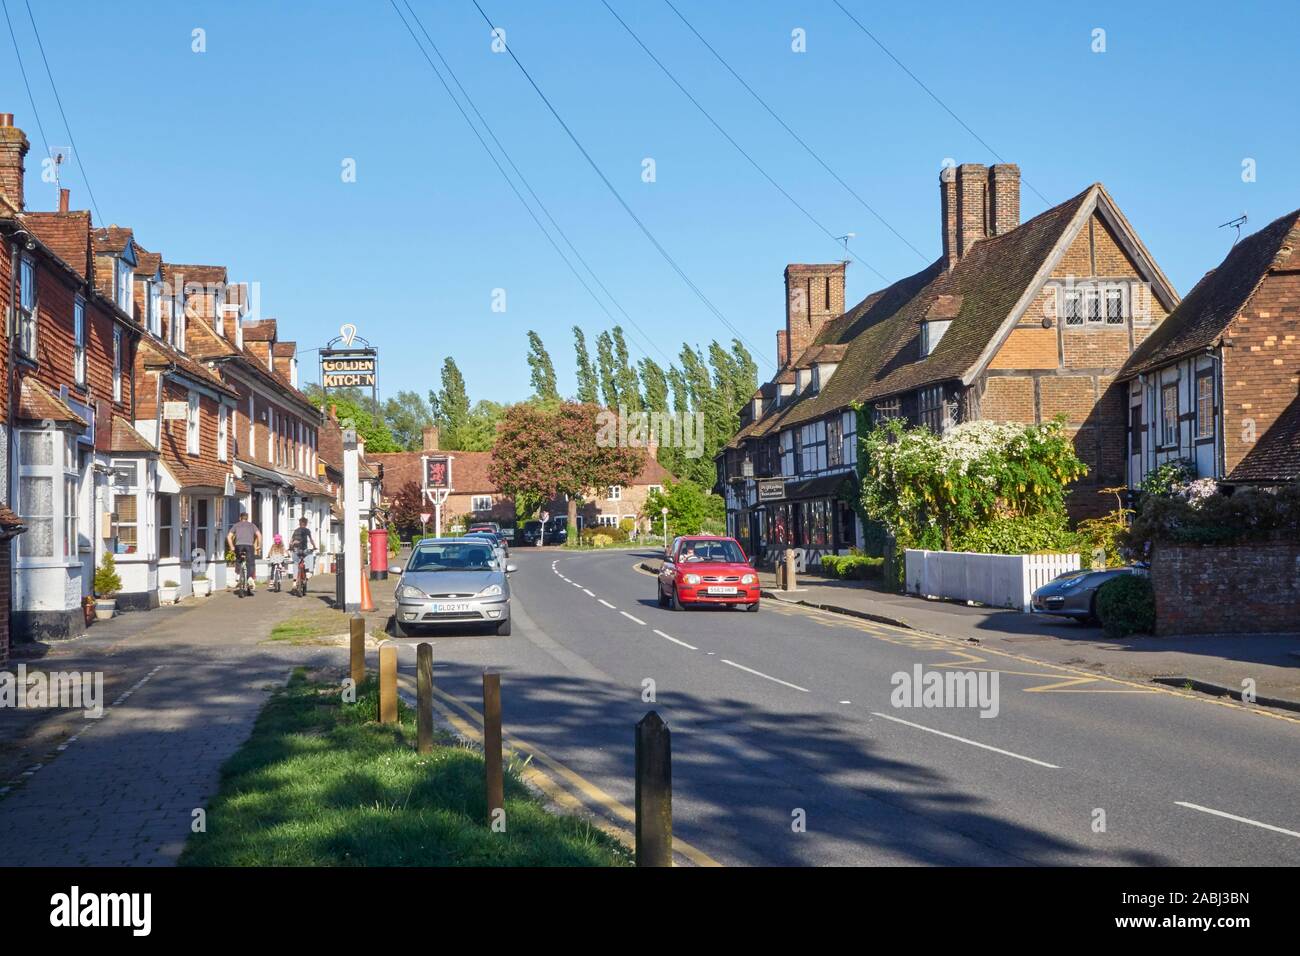 The picturesque Wealden village of Biddenden, Kent, UK Stock Photo